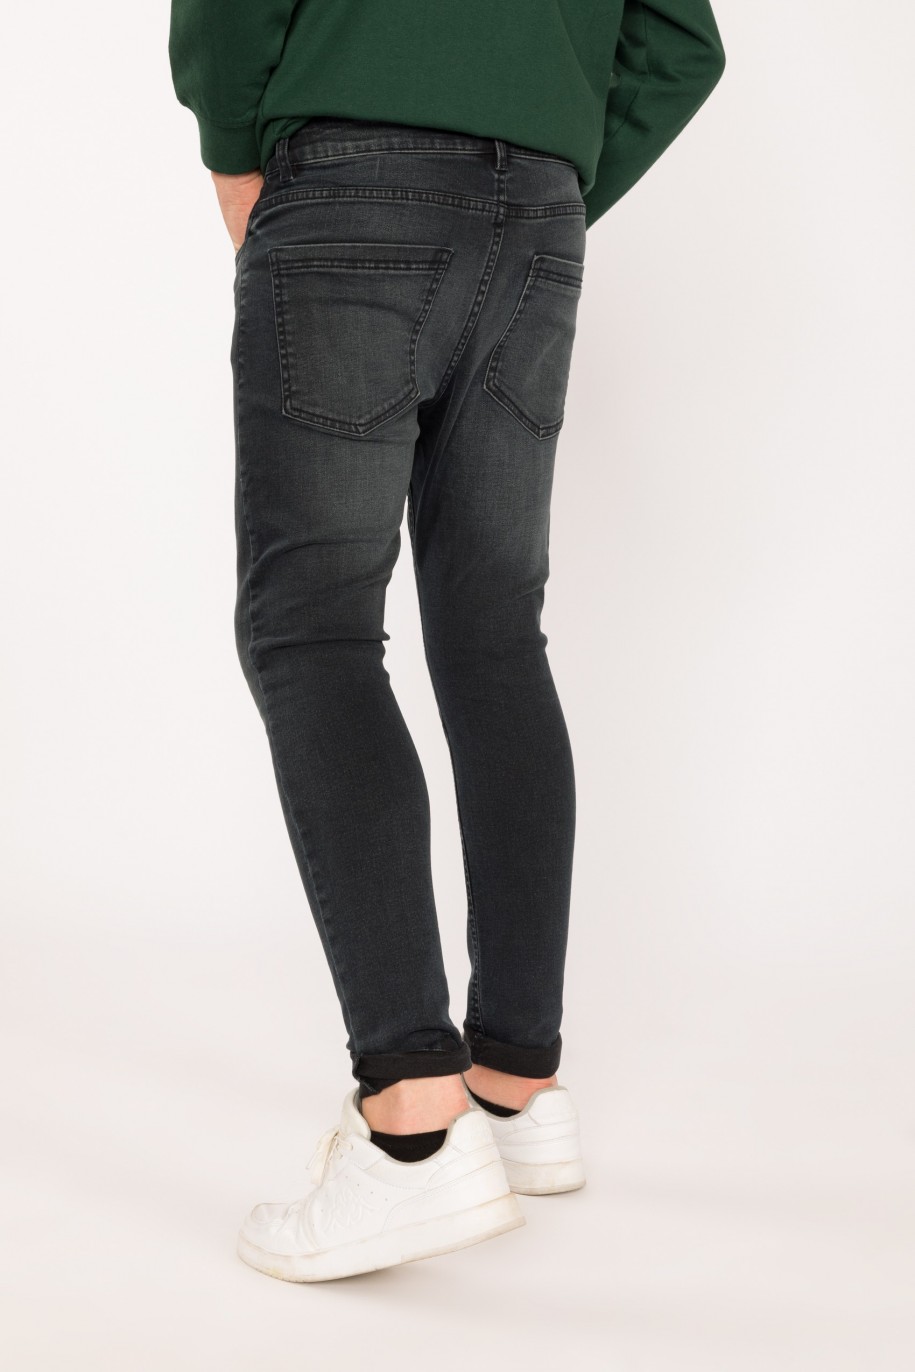 Jeansowe, granatowe spodnie dla chłopaka SLIM - 29523